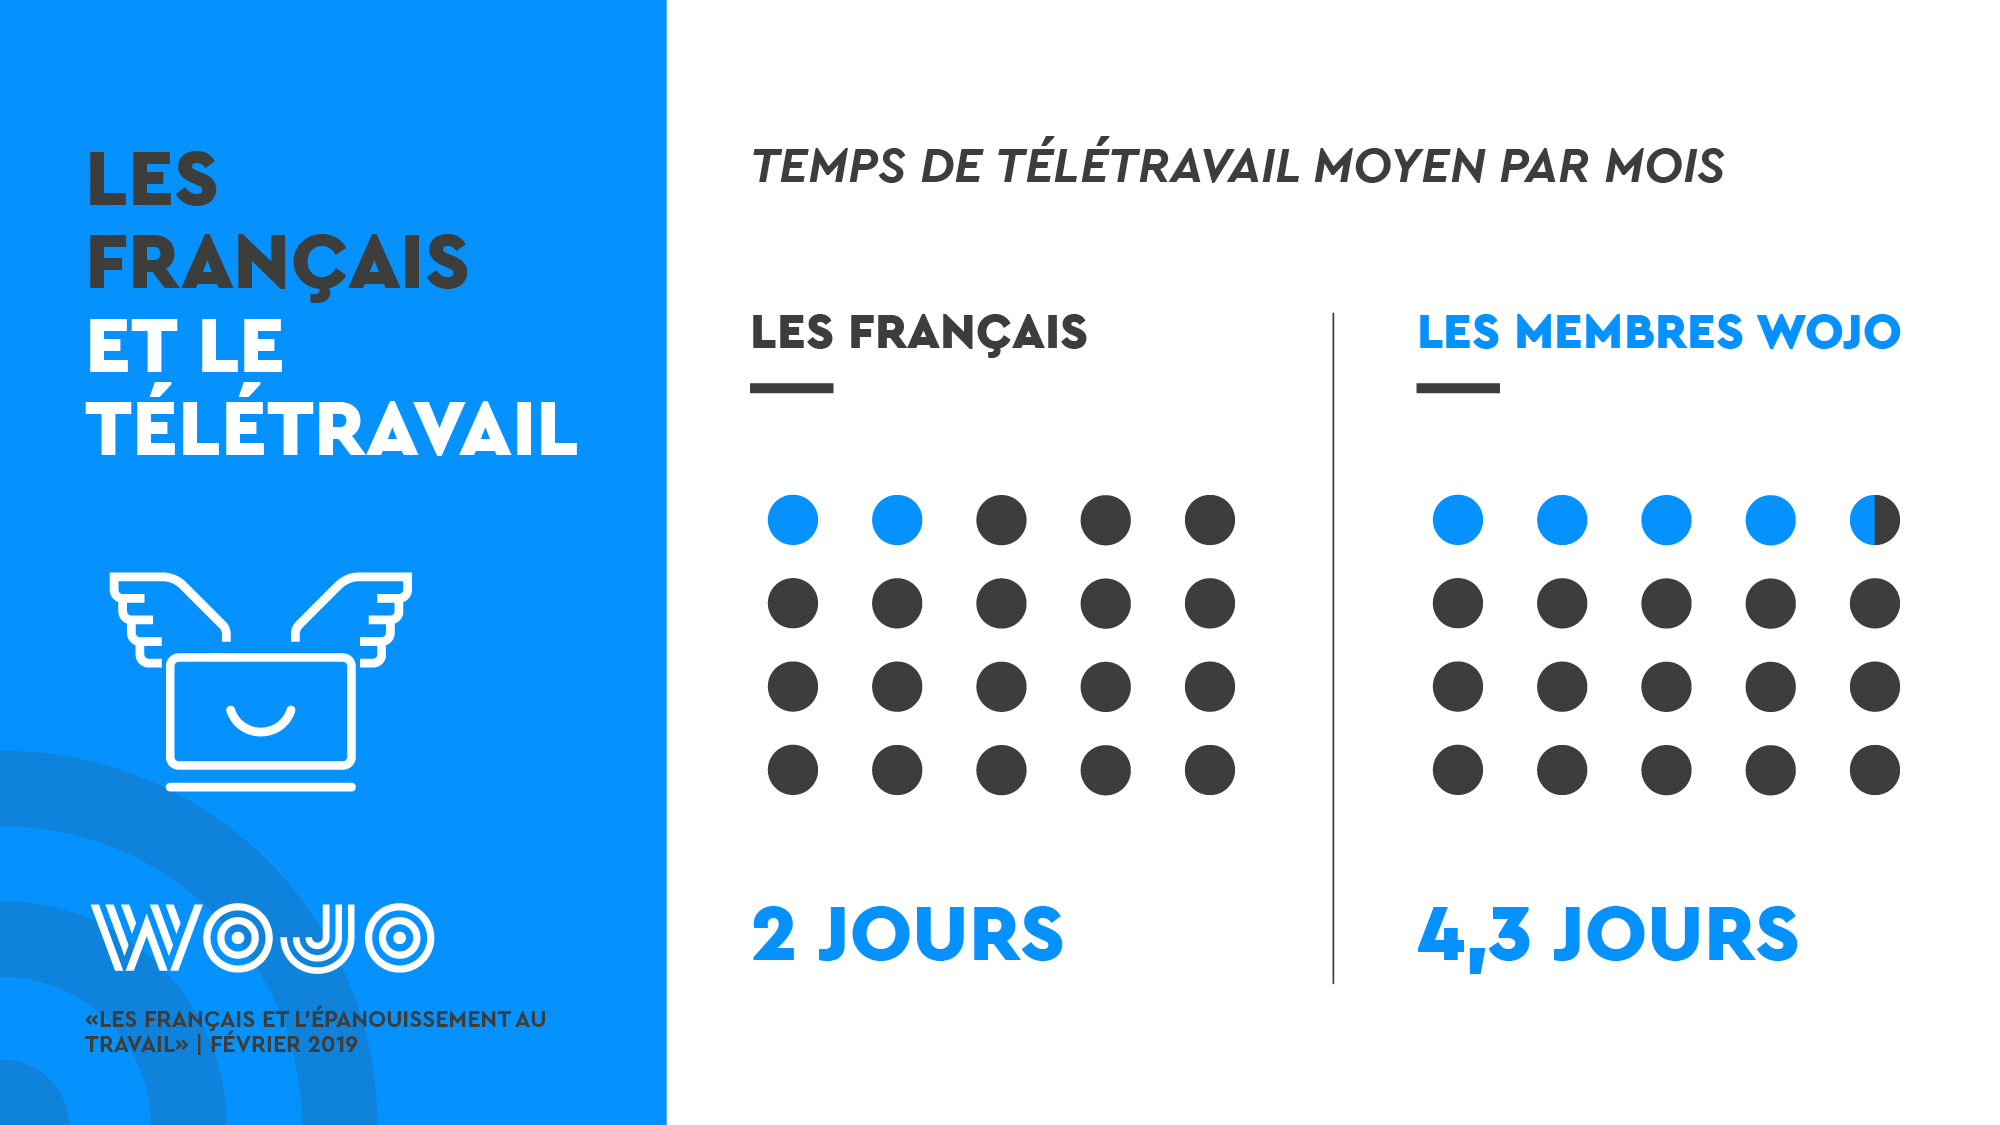 Les Français et l'épanouissement au travail - Enquête WOJO - Télétravail © Data visualisation : ÉCLAIRAGE PUBLIC